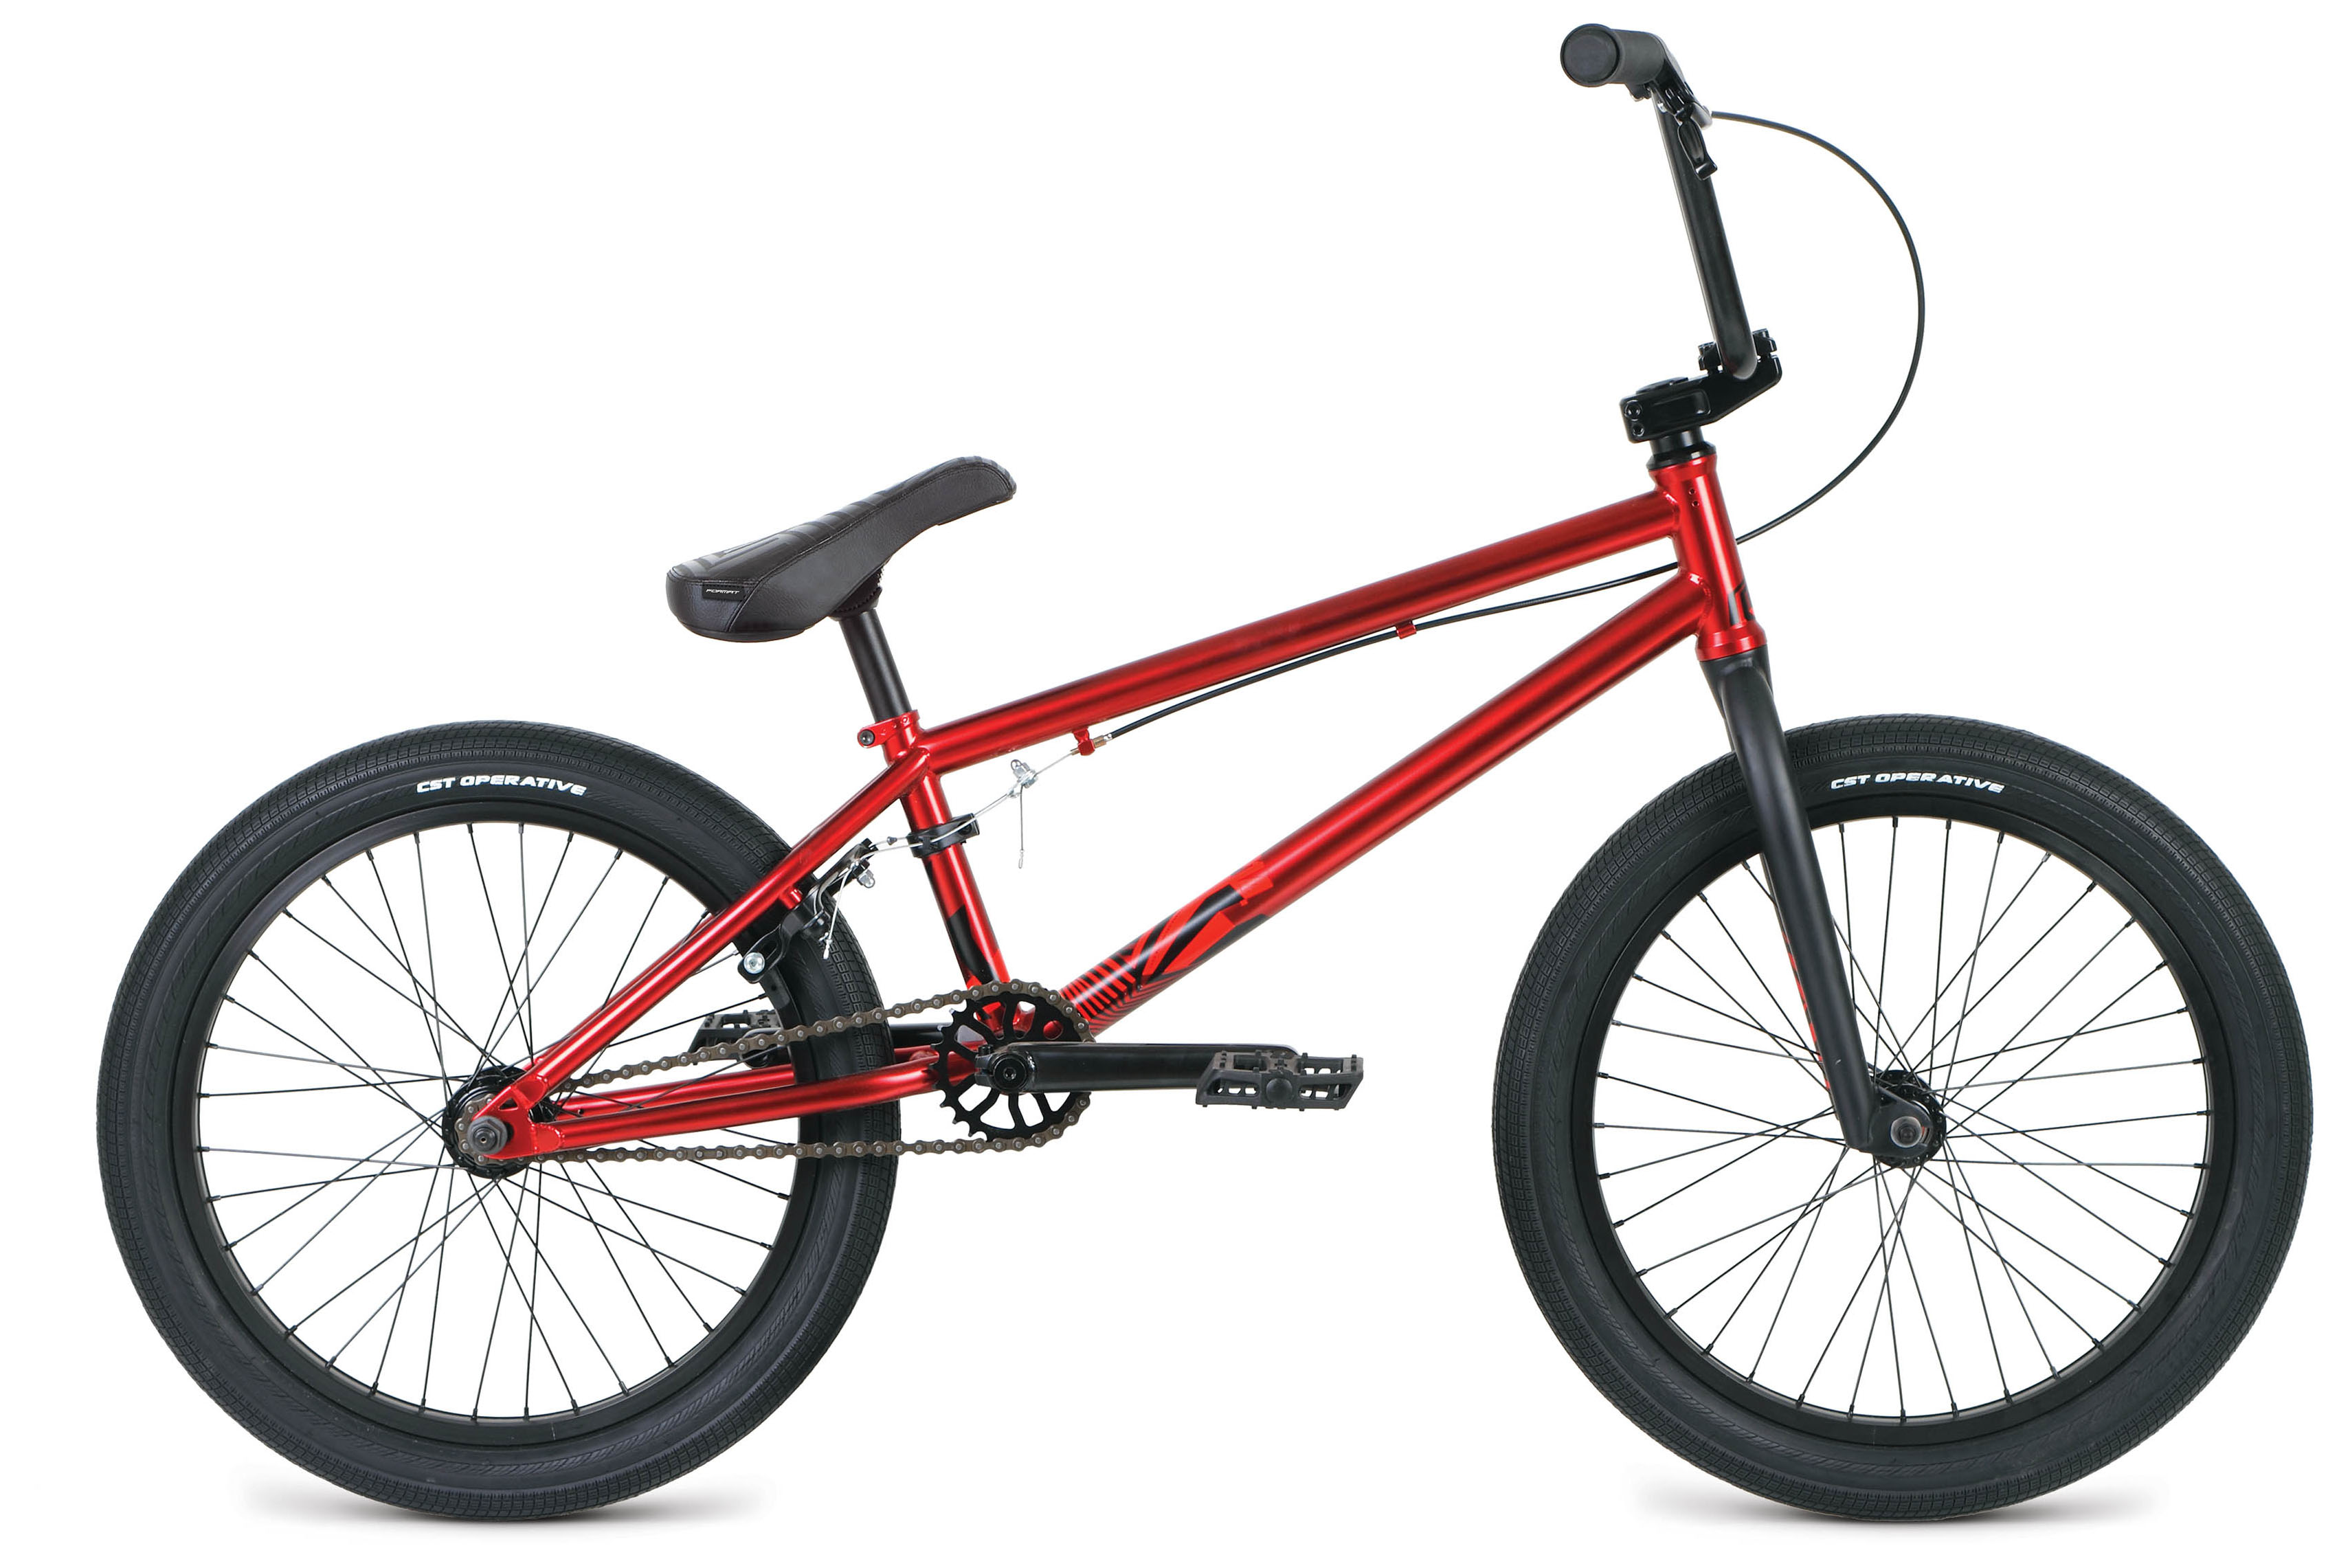  Отзывы о Велосипеде BMX Format 3214 20 2019